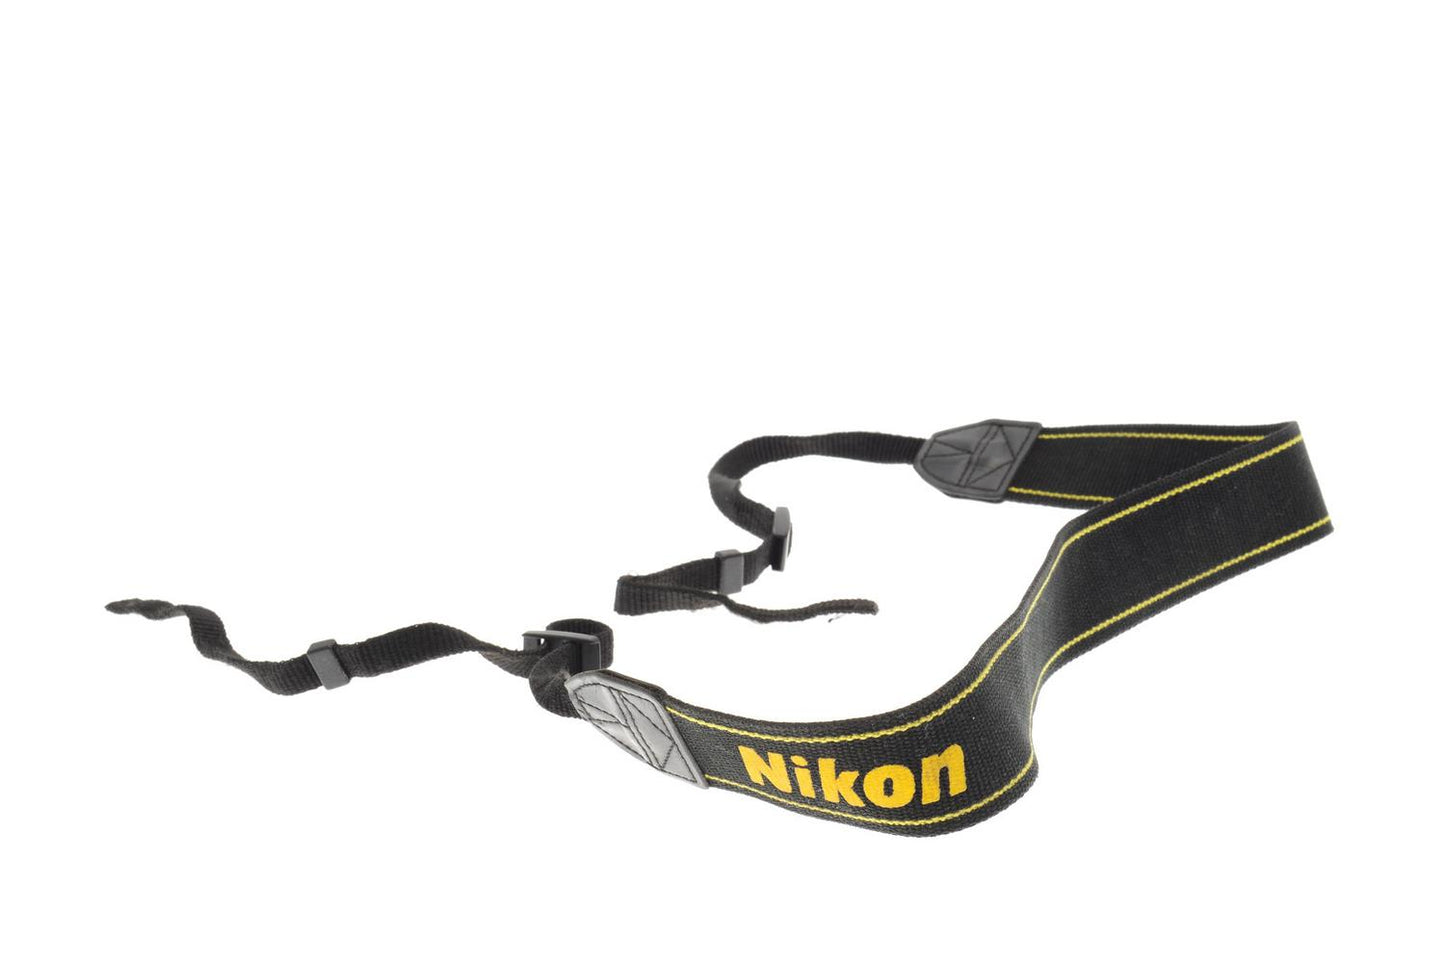 Nikon Black & Yellow Fabric Neck Strap - Accessory